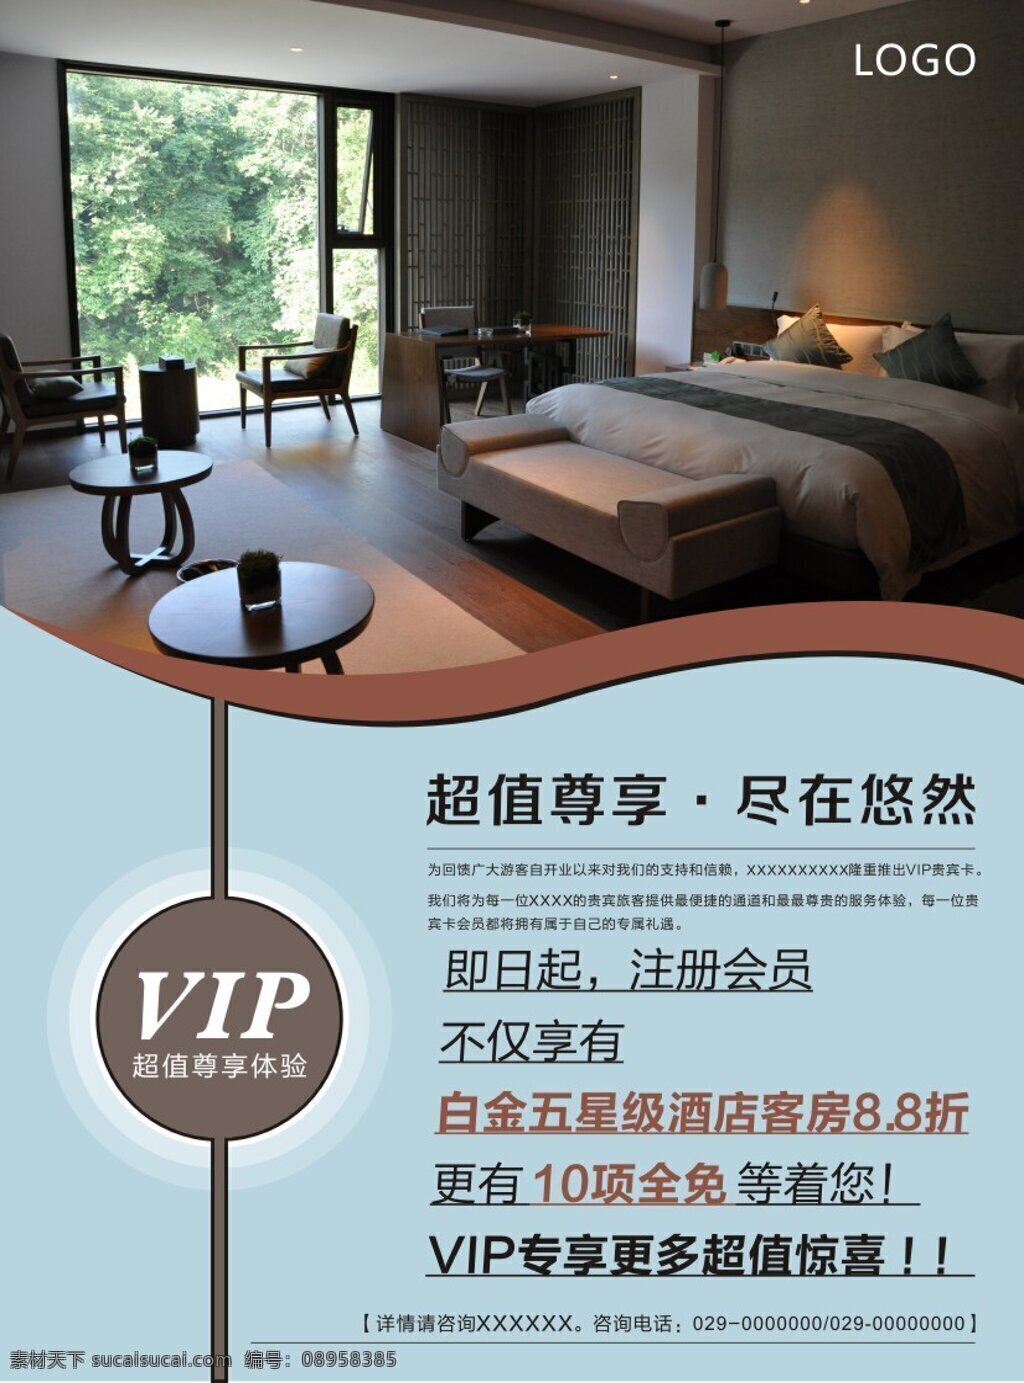 酒店 vip 海报 酒店vip 宣传素材 原创设计